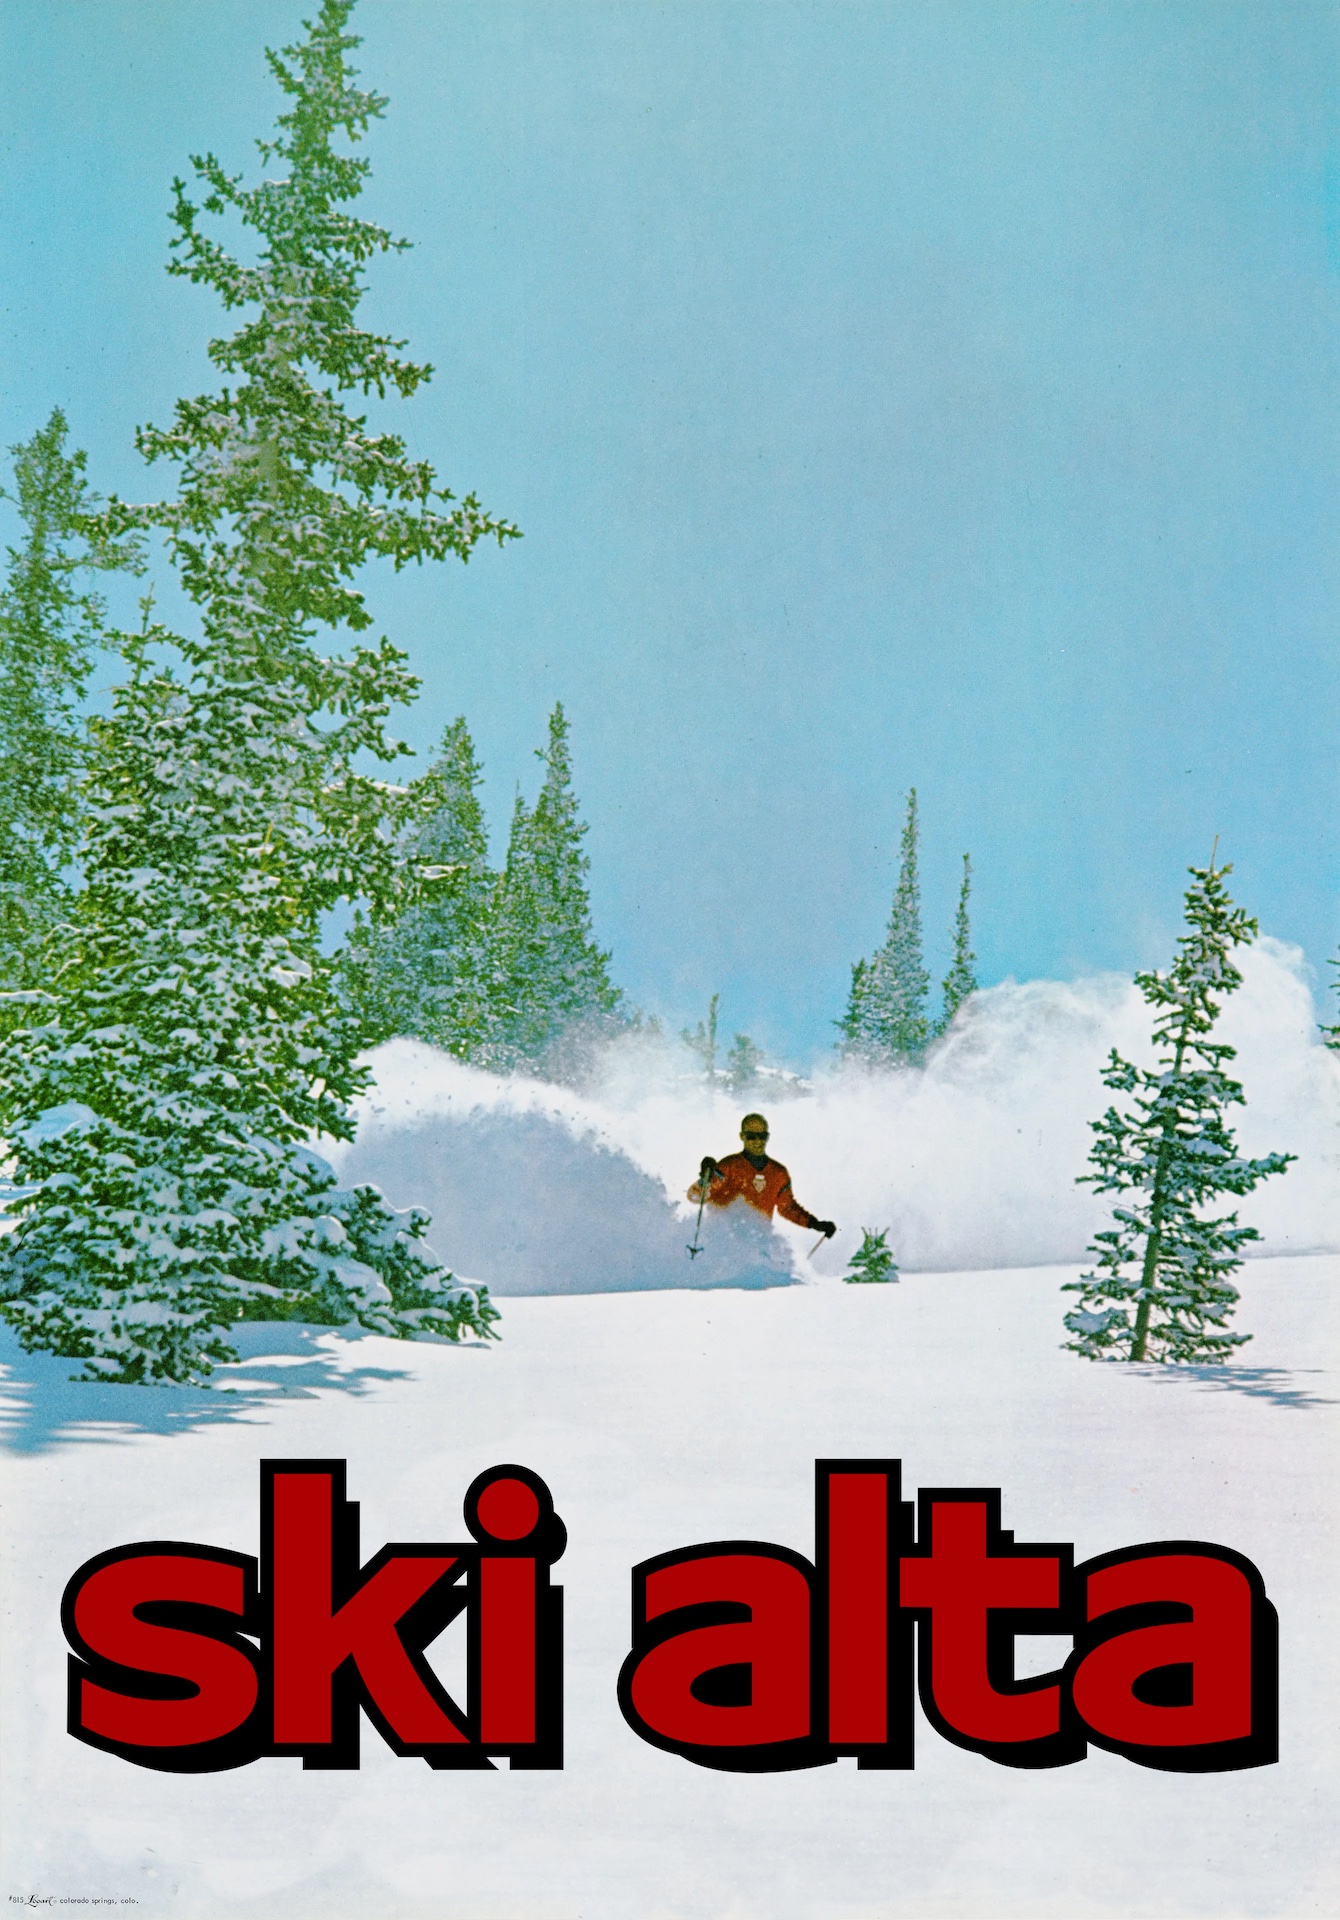 A reimagined vintage ski tourism poster